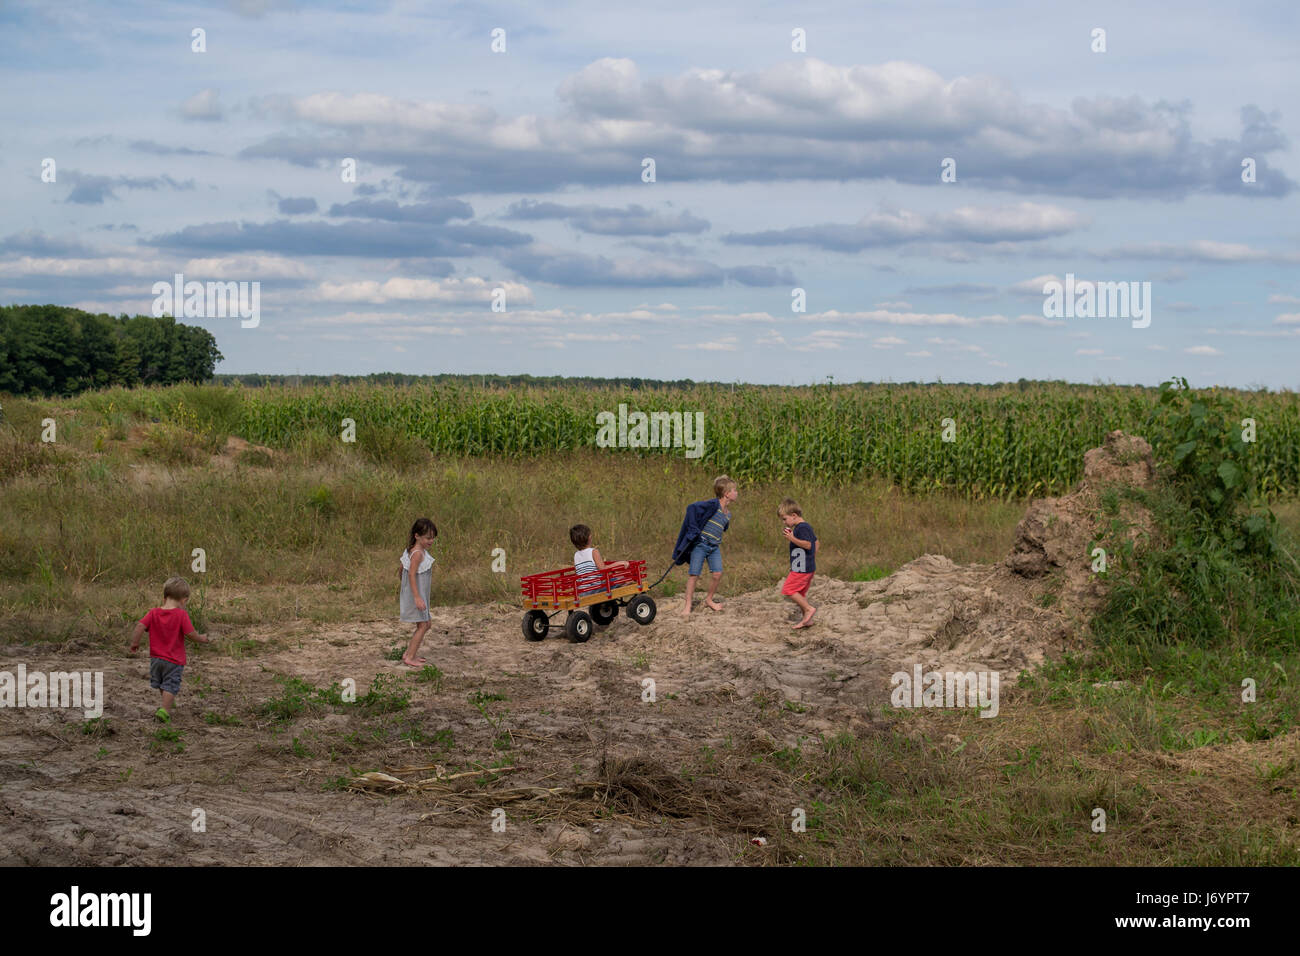 Cinq enfants jouant dans un champ avec un chariot Banque D'Images